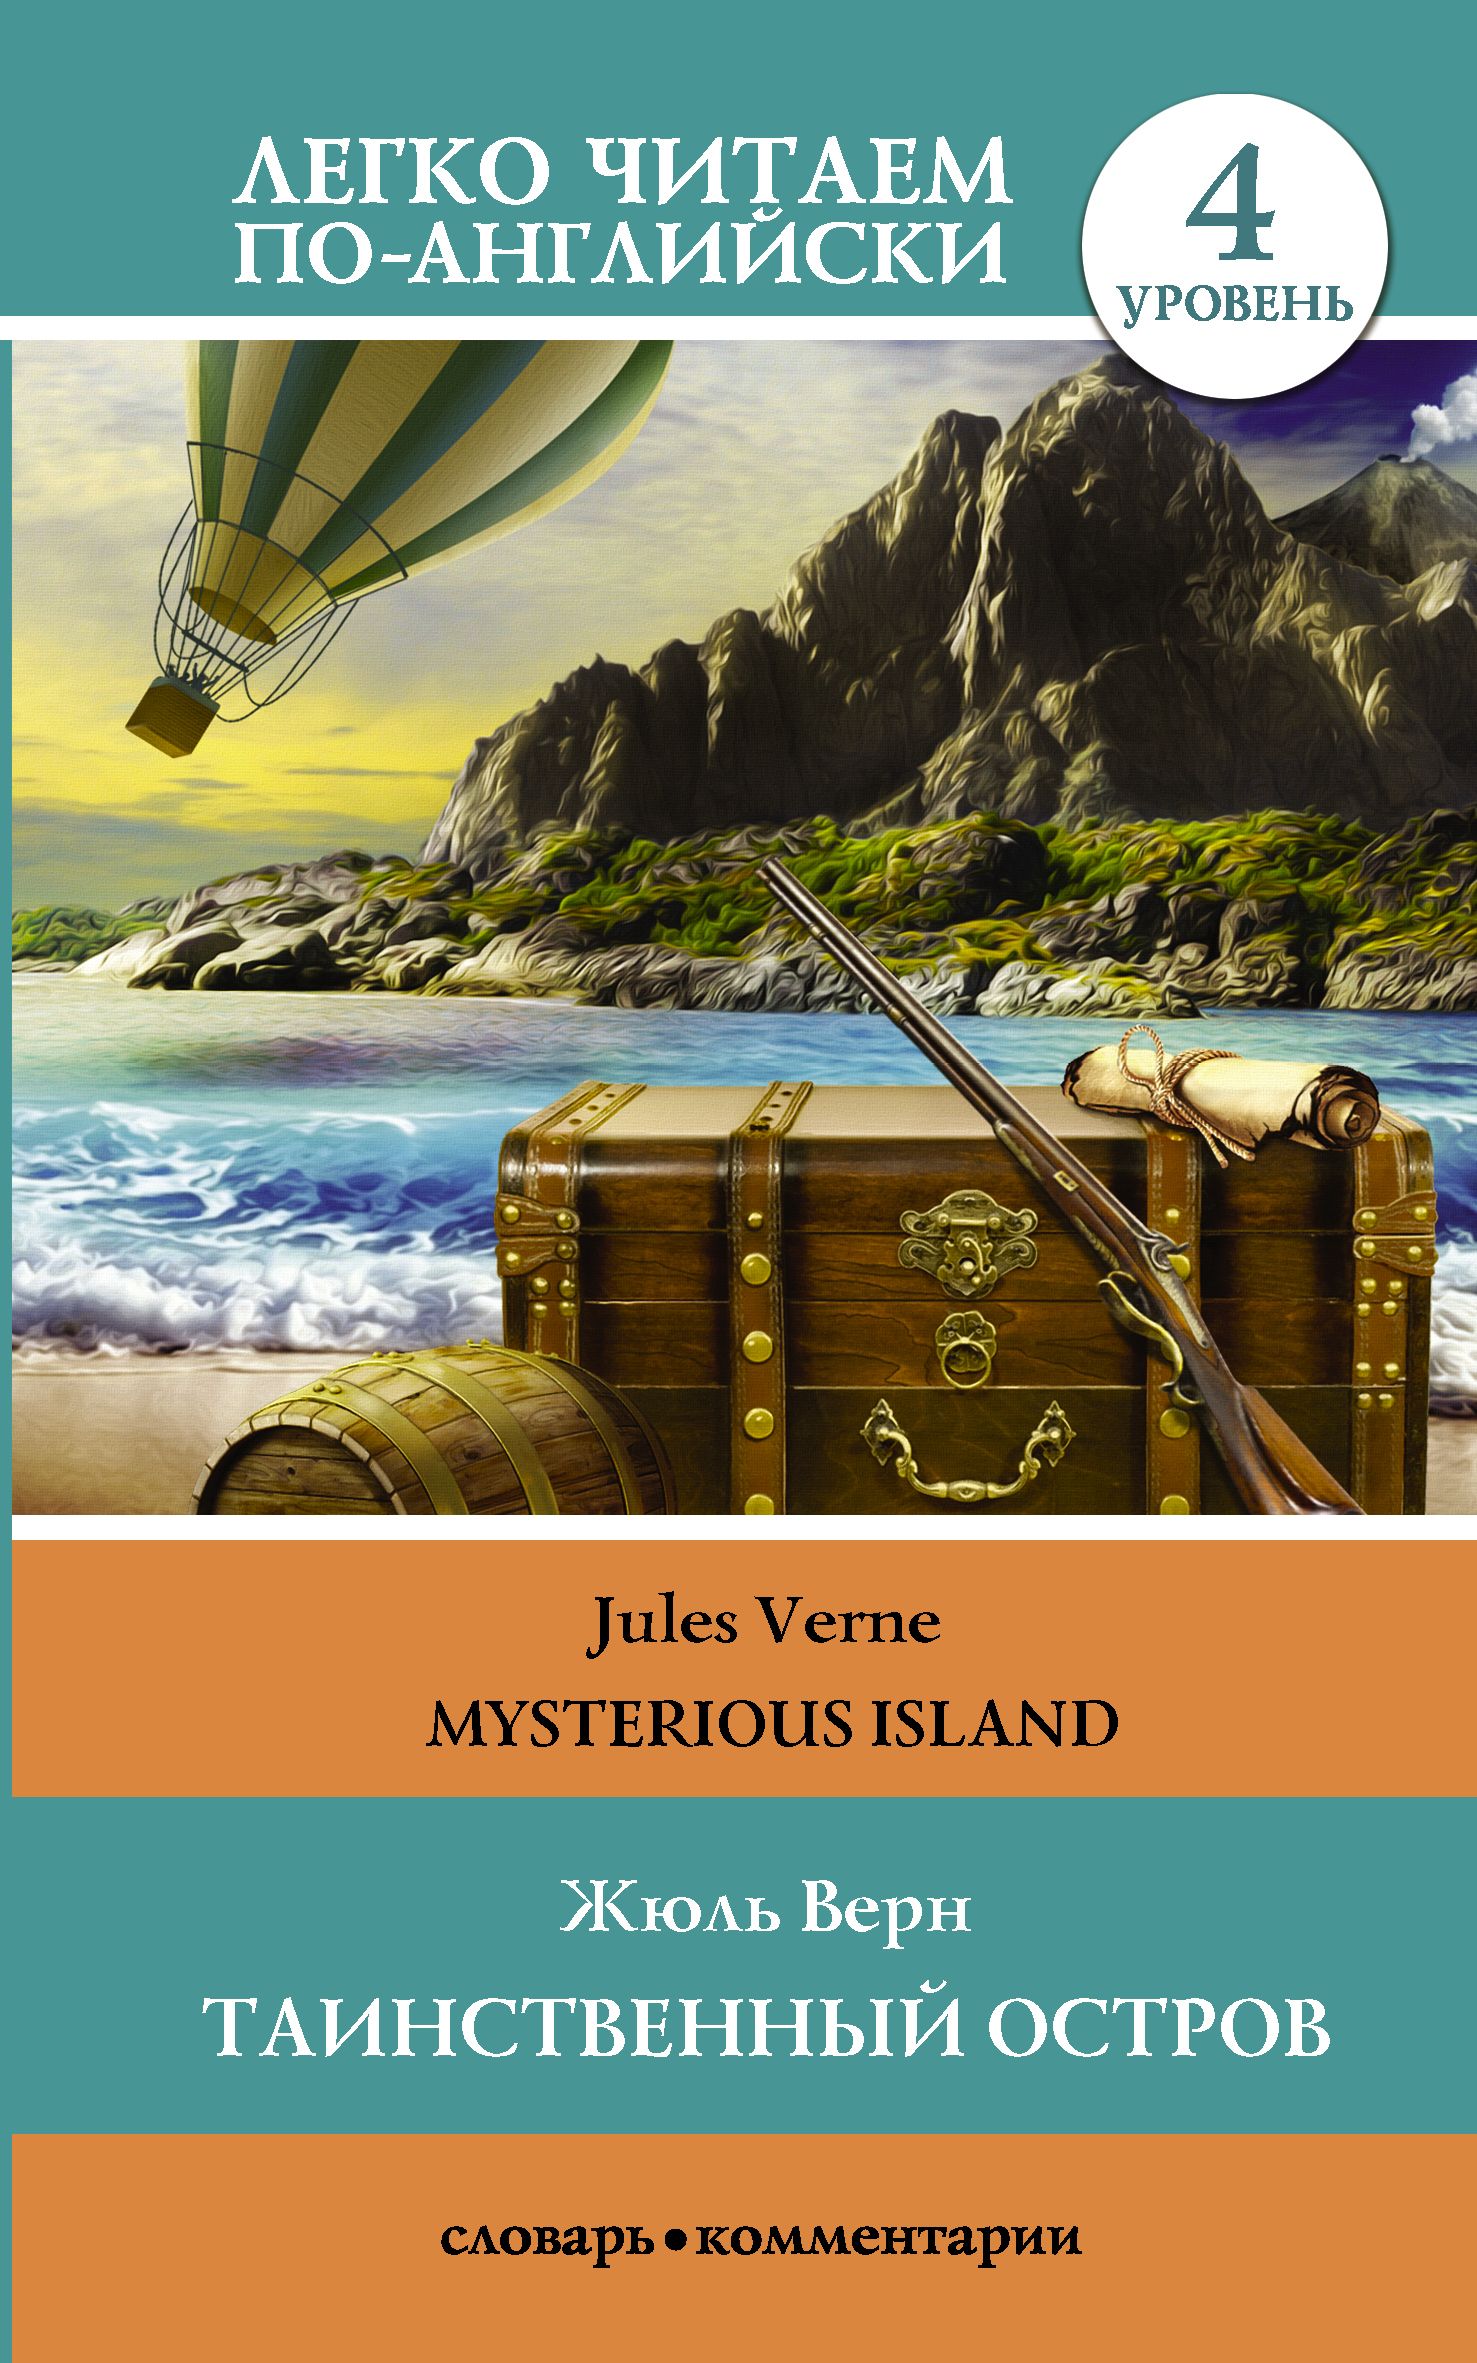 Жюль верна таинственный остров отзывы. Жюль Верн таинственный остров о романе. Книга ж. верна "таинственный остров". Таинственный остров Жюль Верн книга. Жюль Верн необитаемый остров.